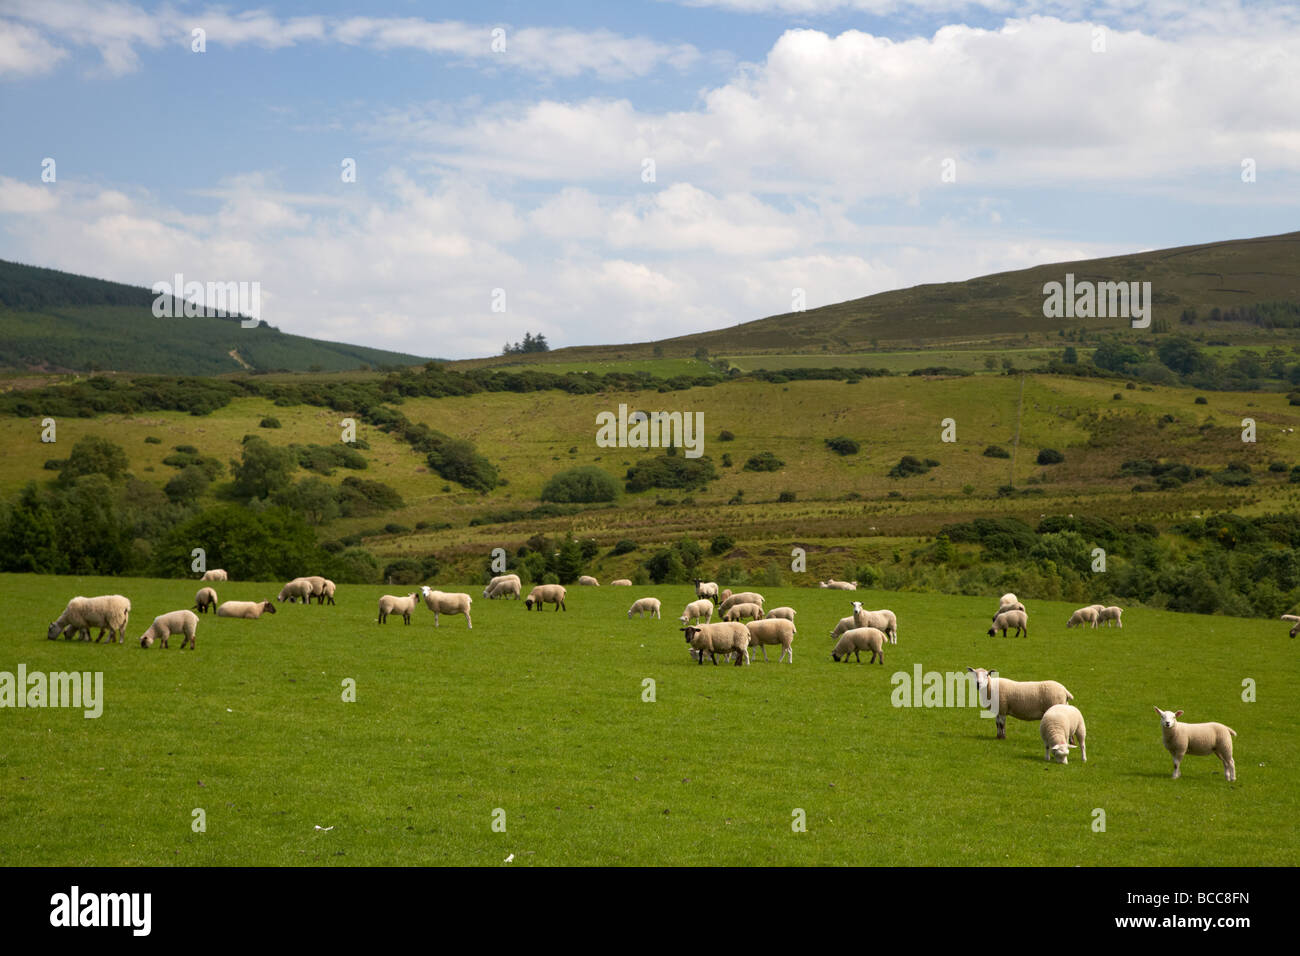 Troupeau de moutons dans un champ sur une colline ferme dans le comté de Derry montagnes Sperrin Londonderry en Irlande du Nord uk Banque D'Images